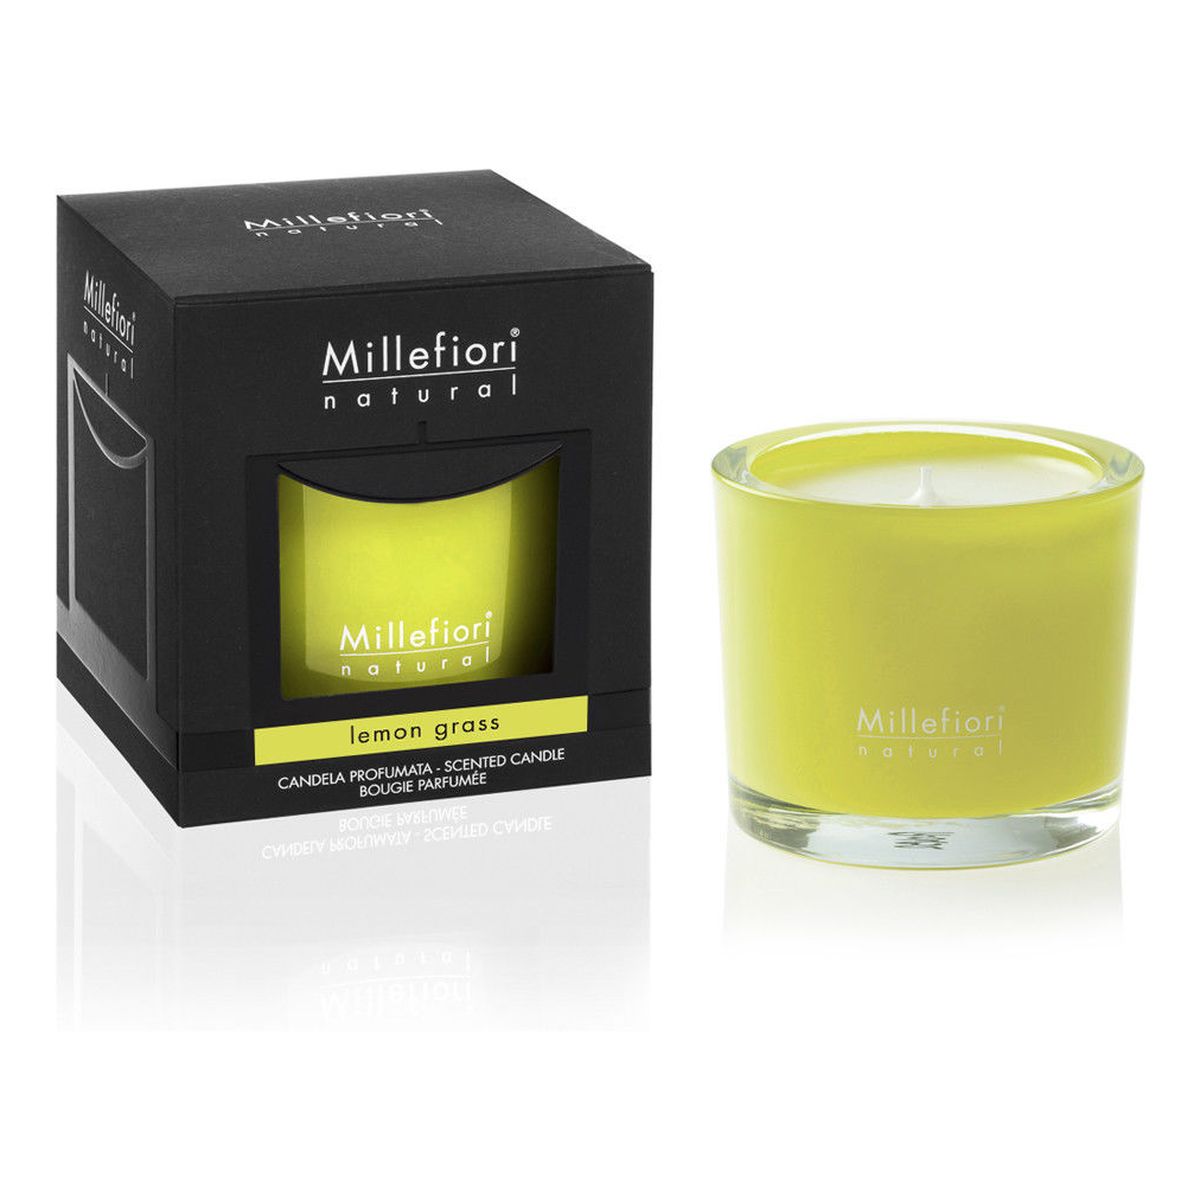 Millefiori Natural świeca zapachowa Lemon Grass 180g